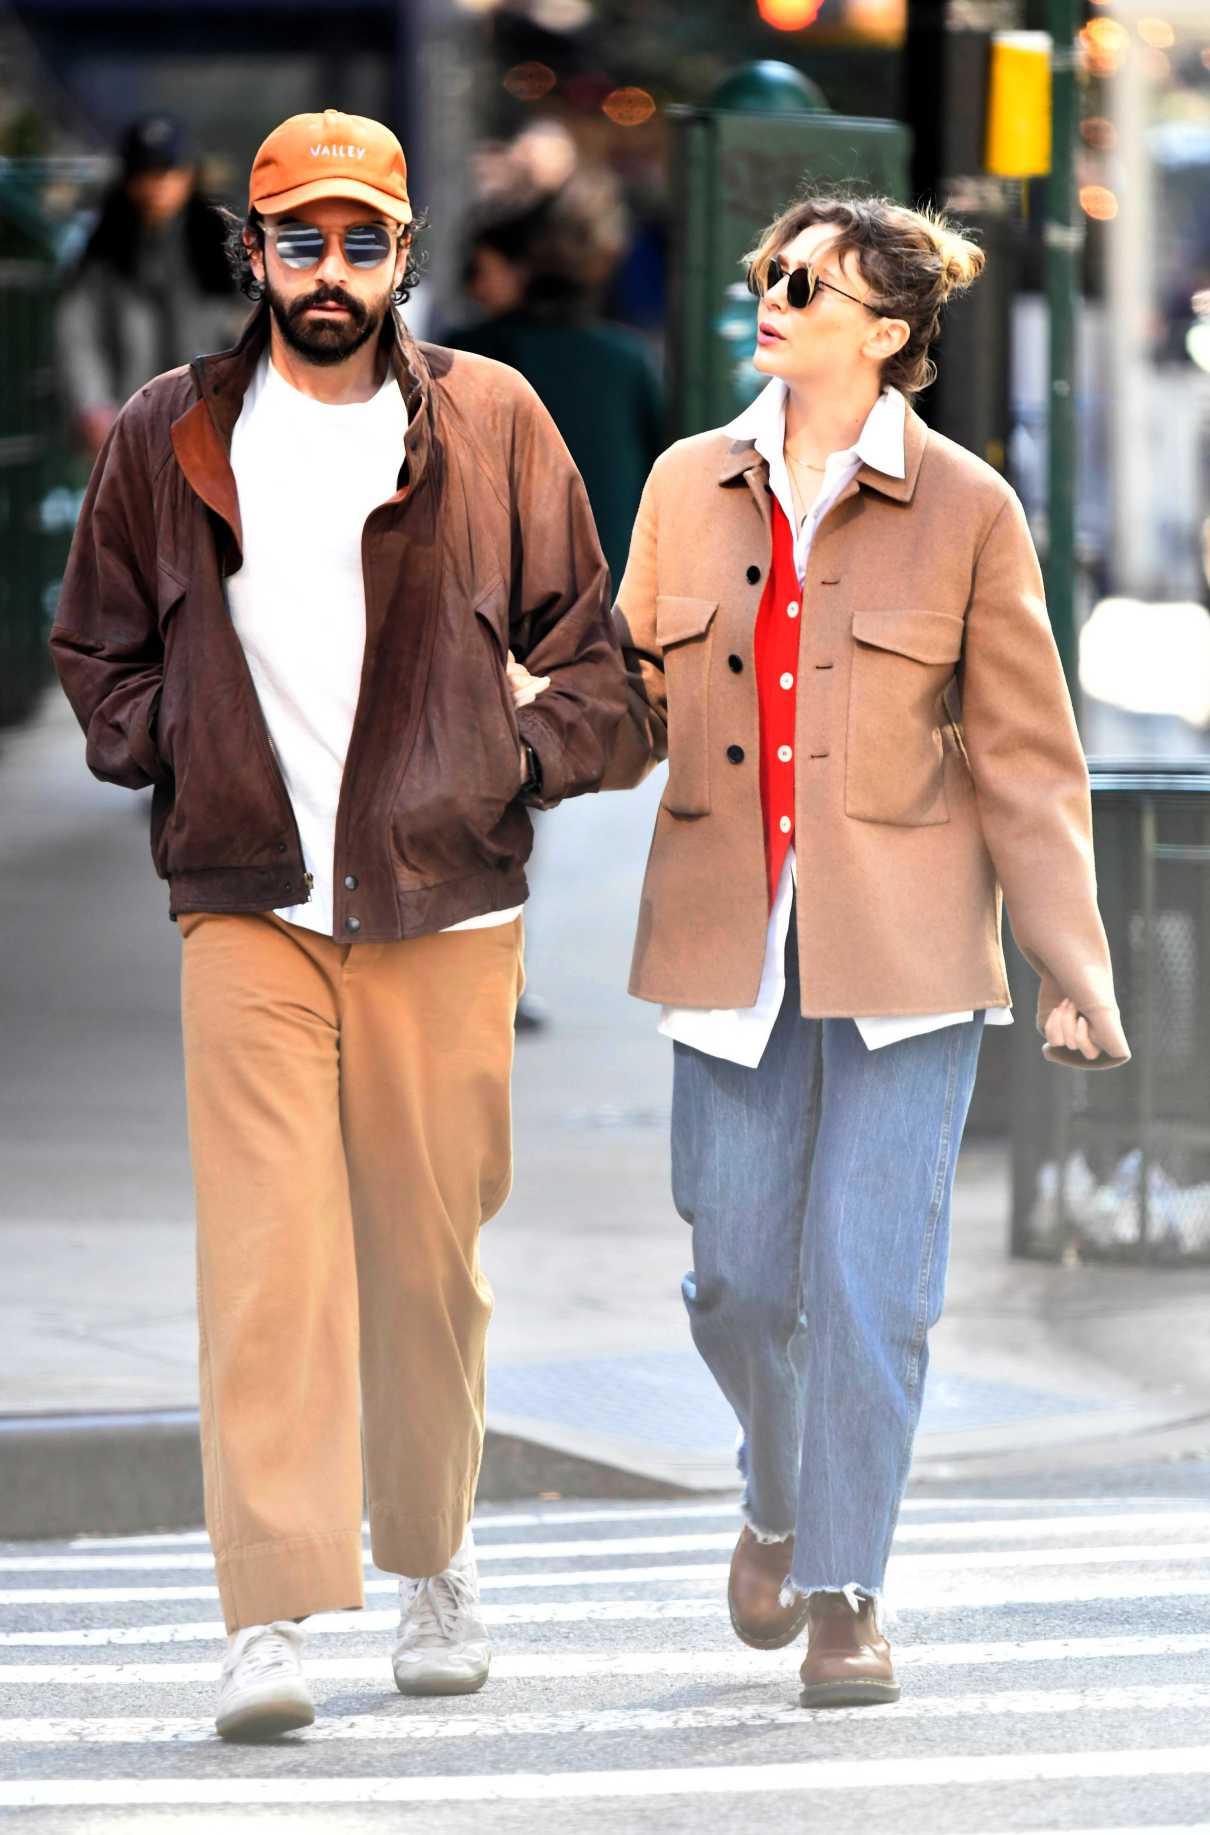 Elizabeth Olsen in a Tan Jacket